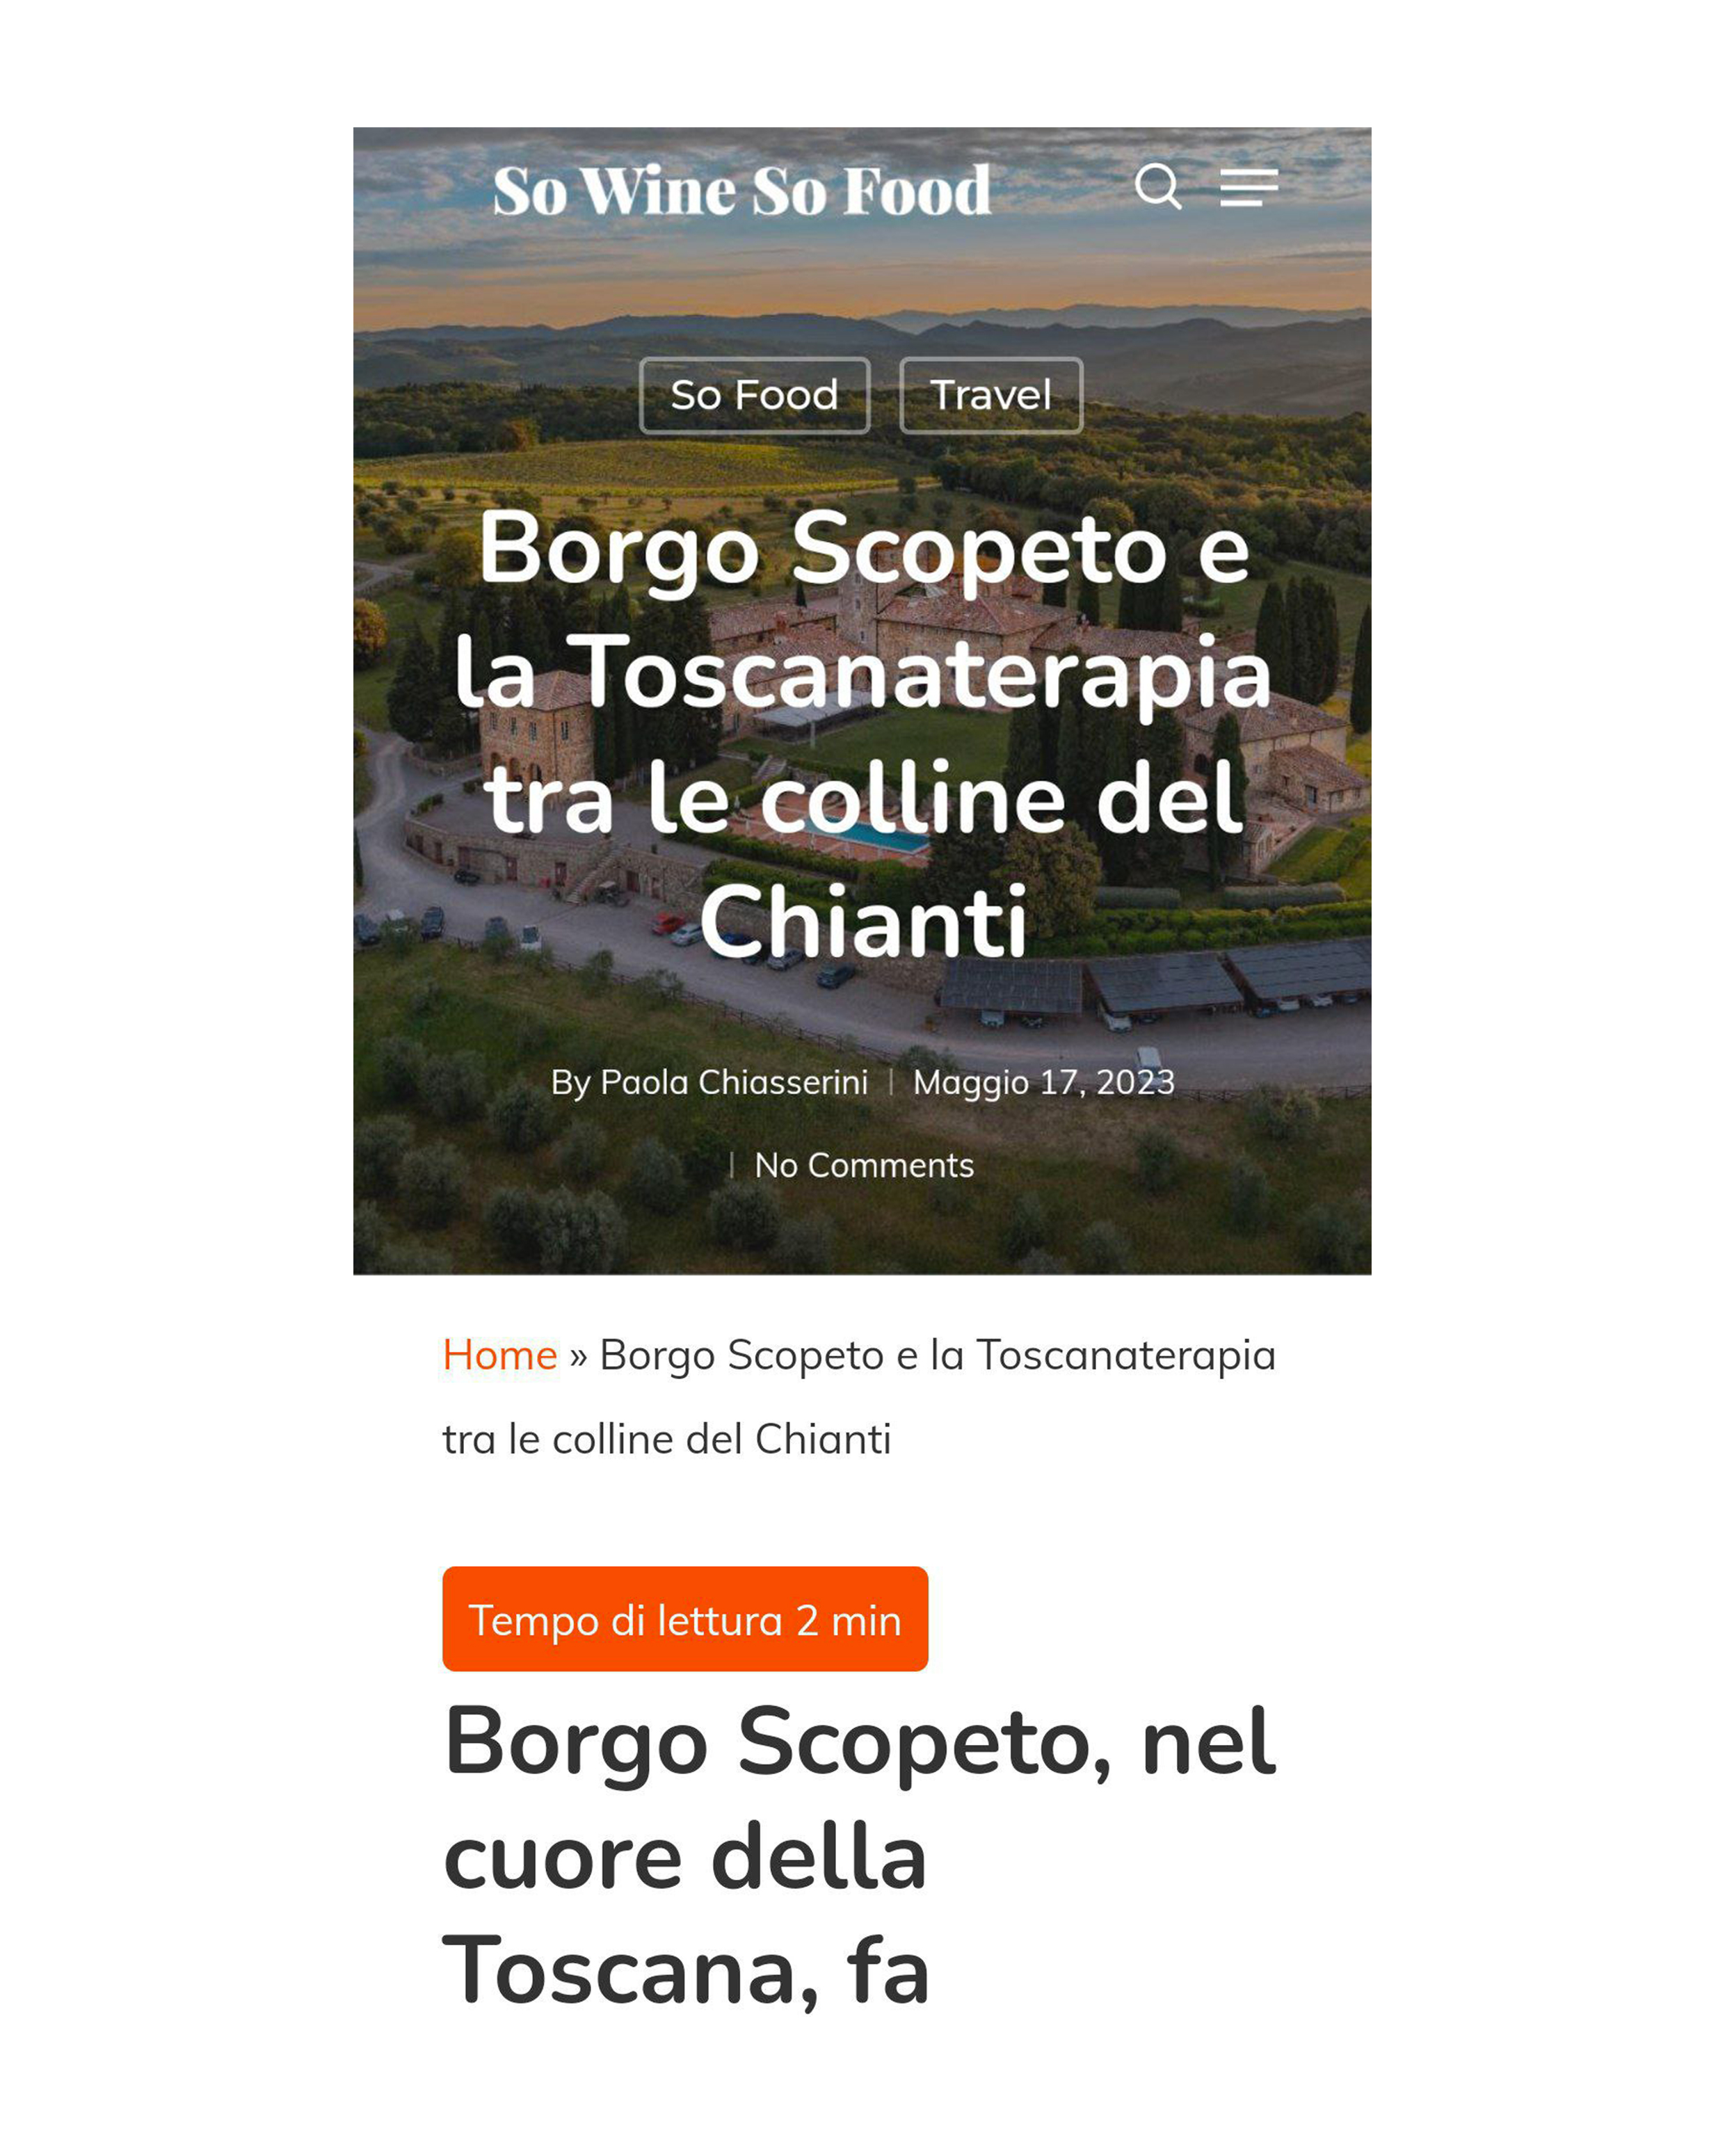 Borgo scopeto wine - press - agenzia di comunicazione Milano